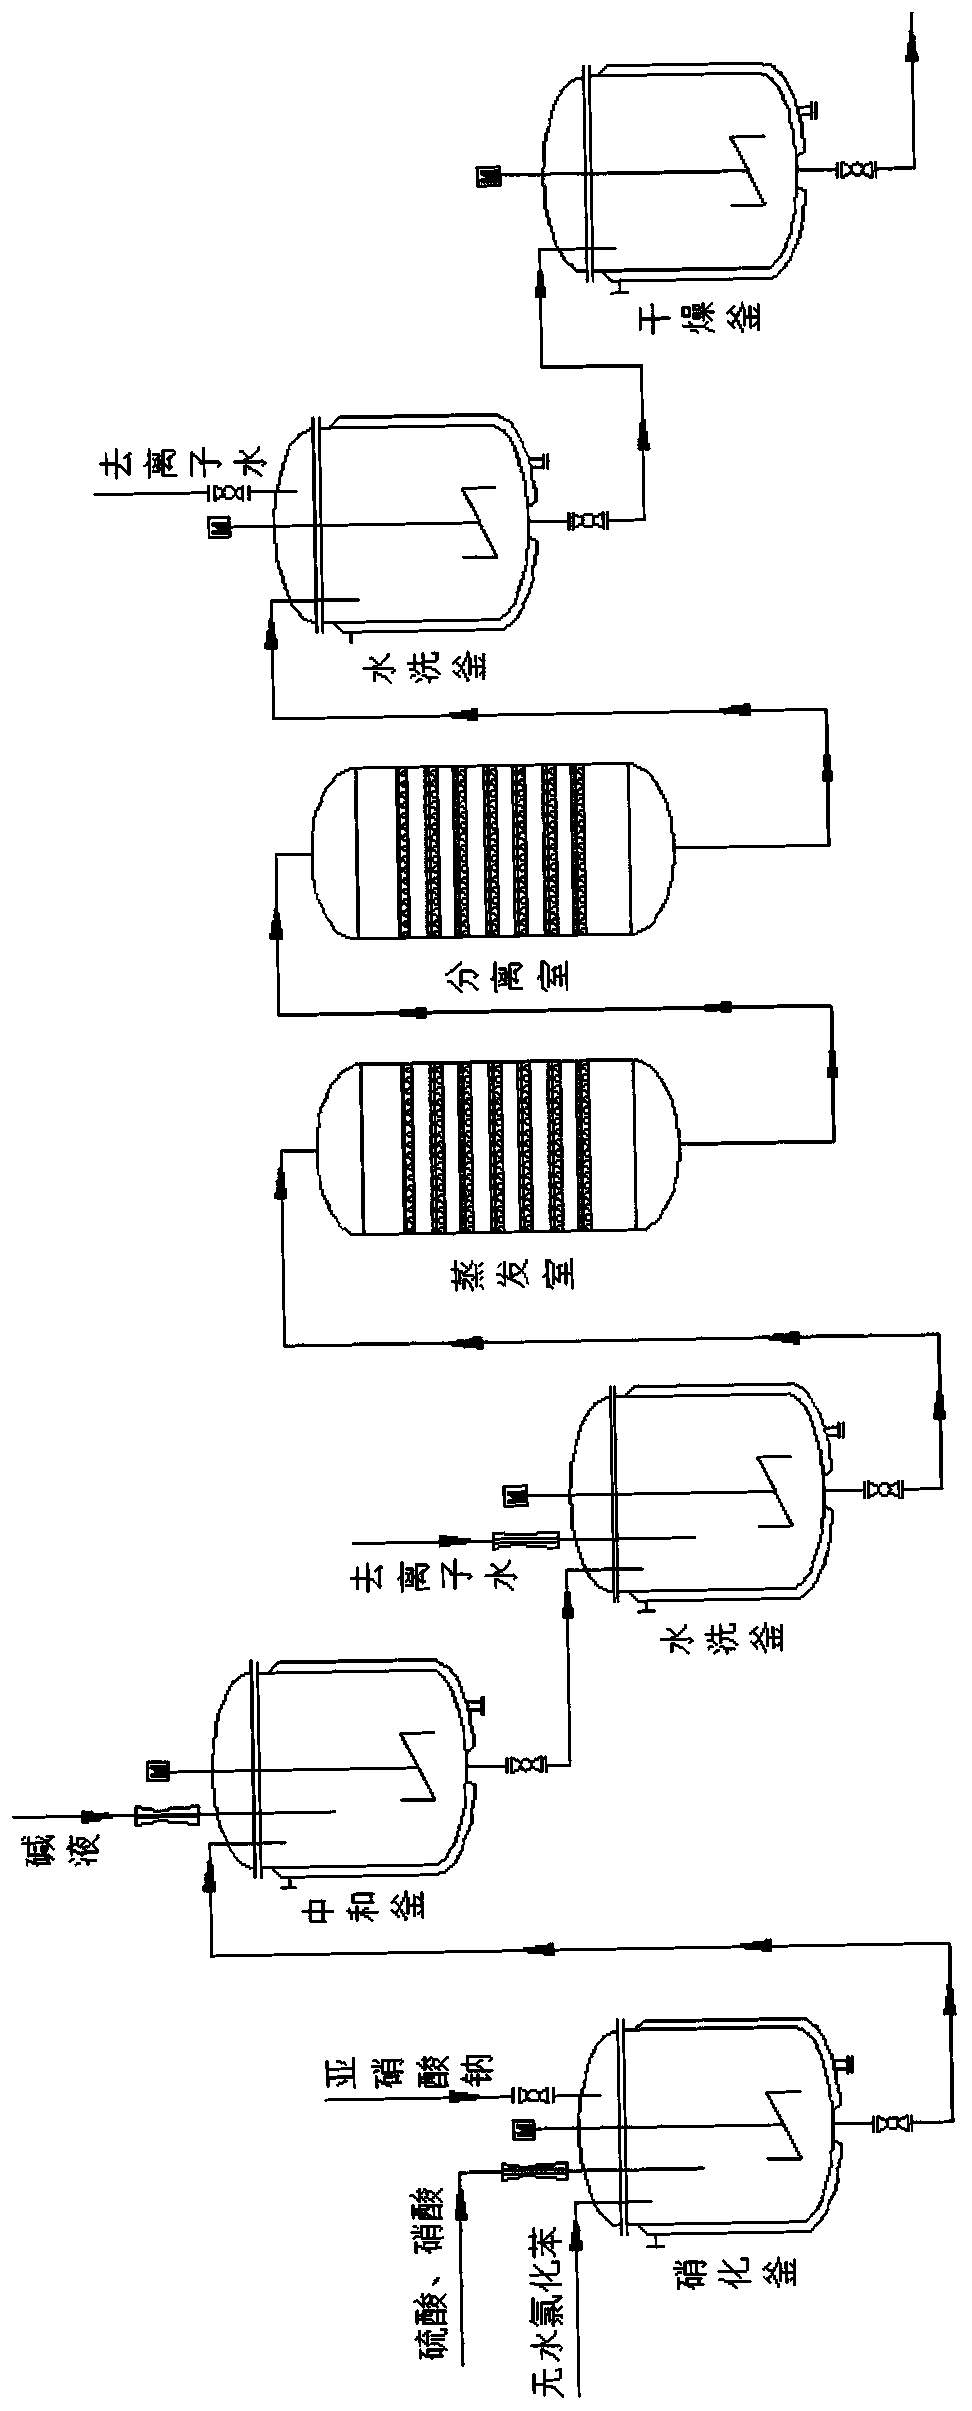 Production method for improving purity of o-nitrochlorobenzene